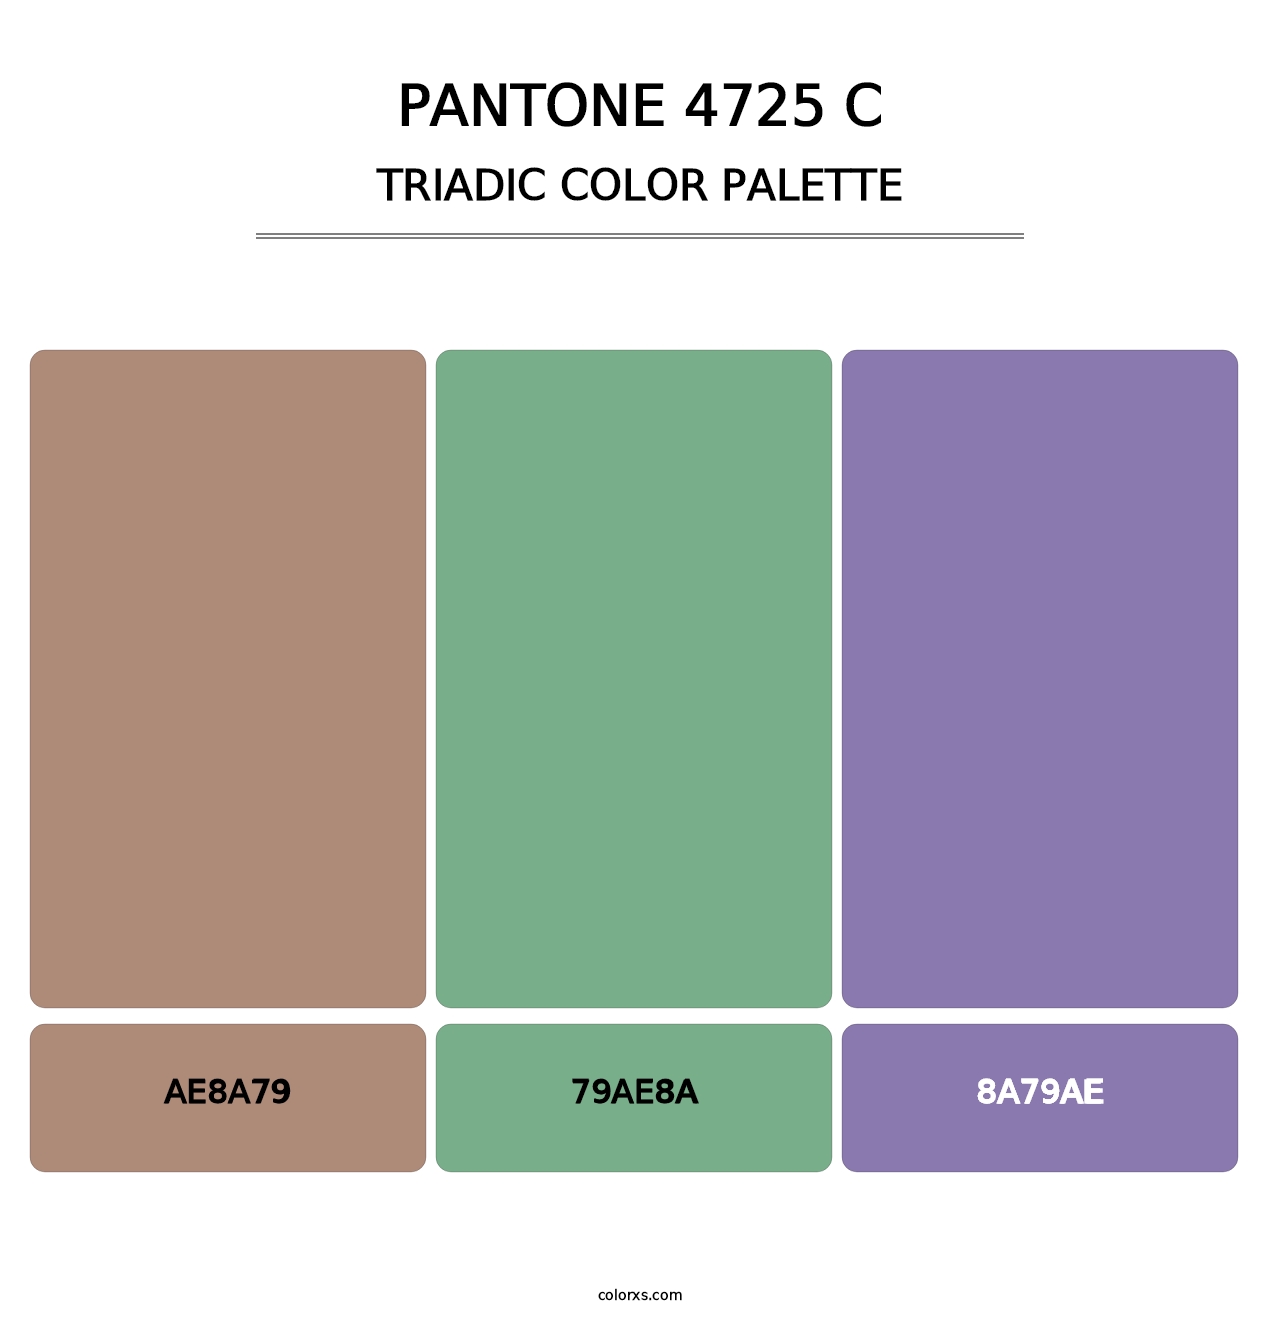 PANTONE 4725 C - Triadic Color Palette